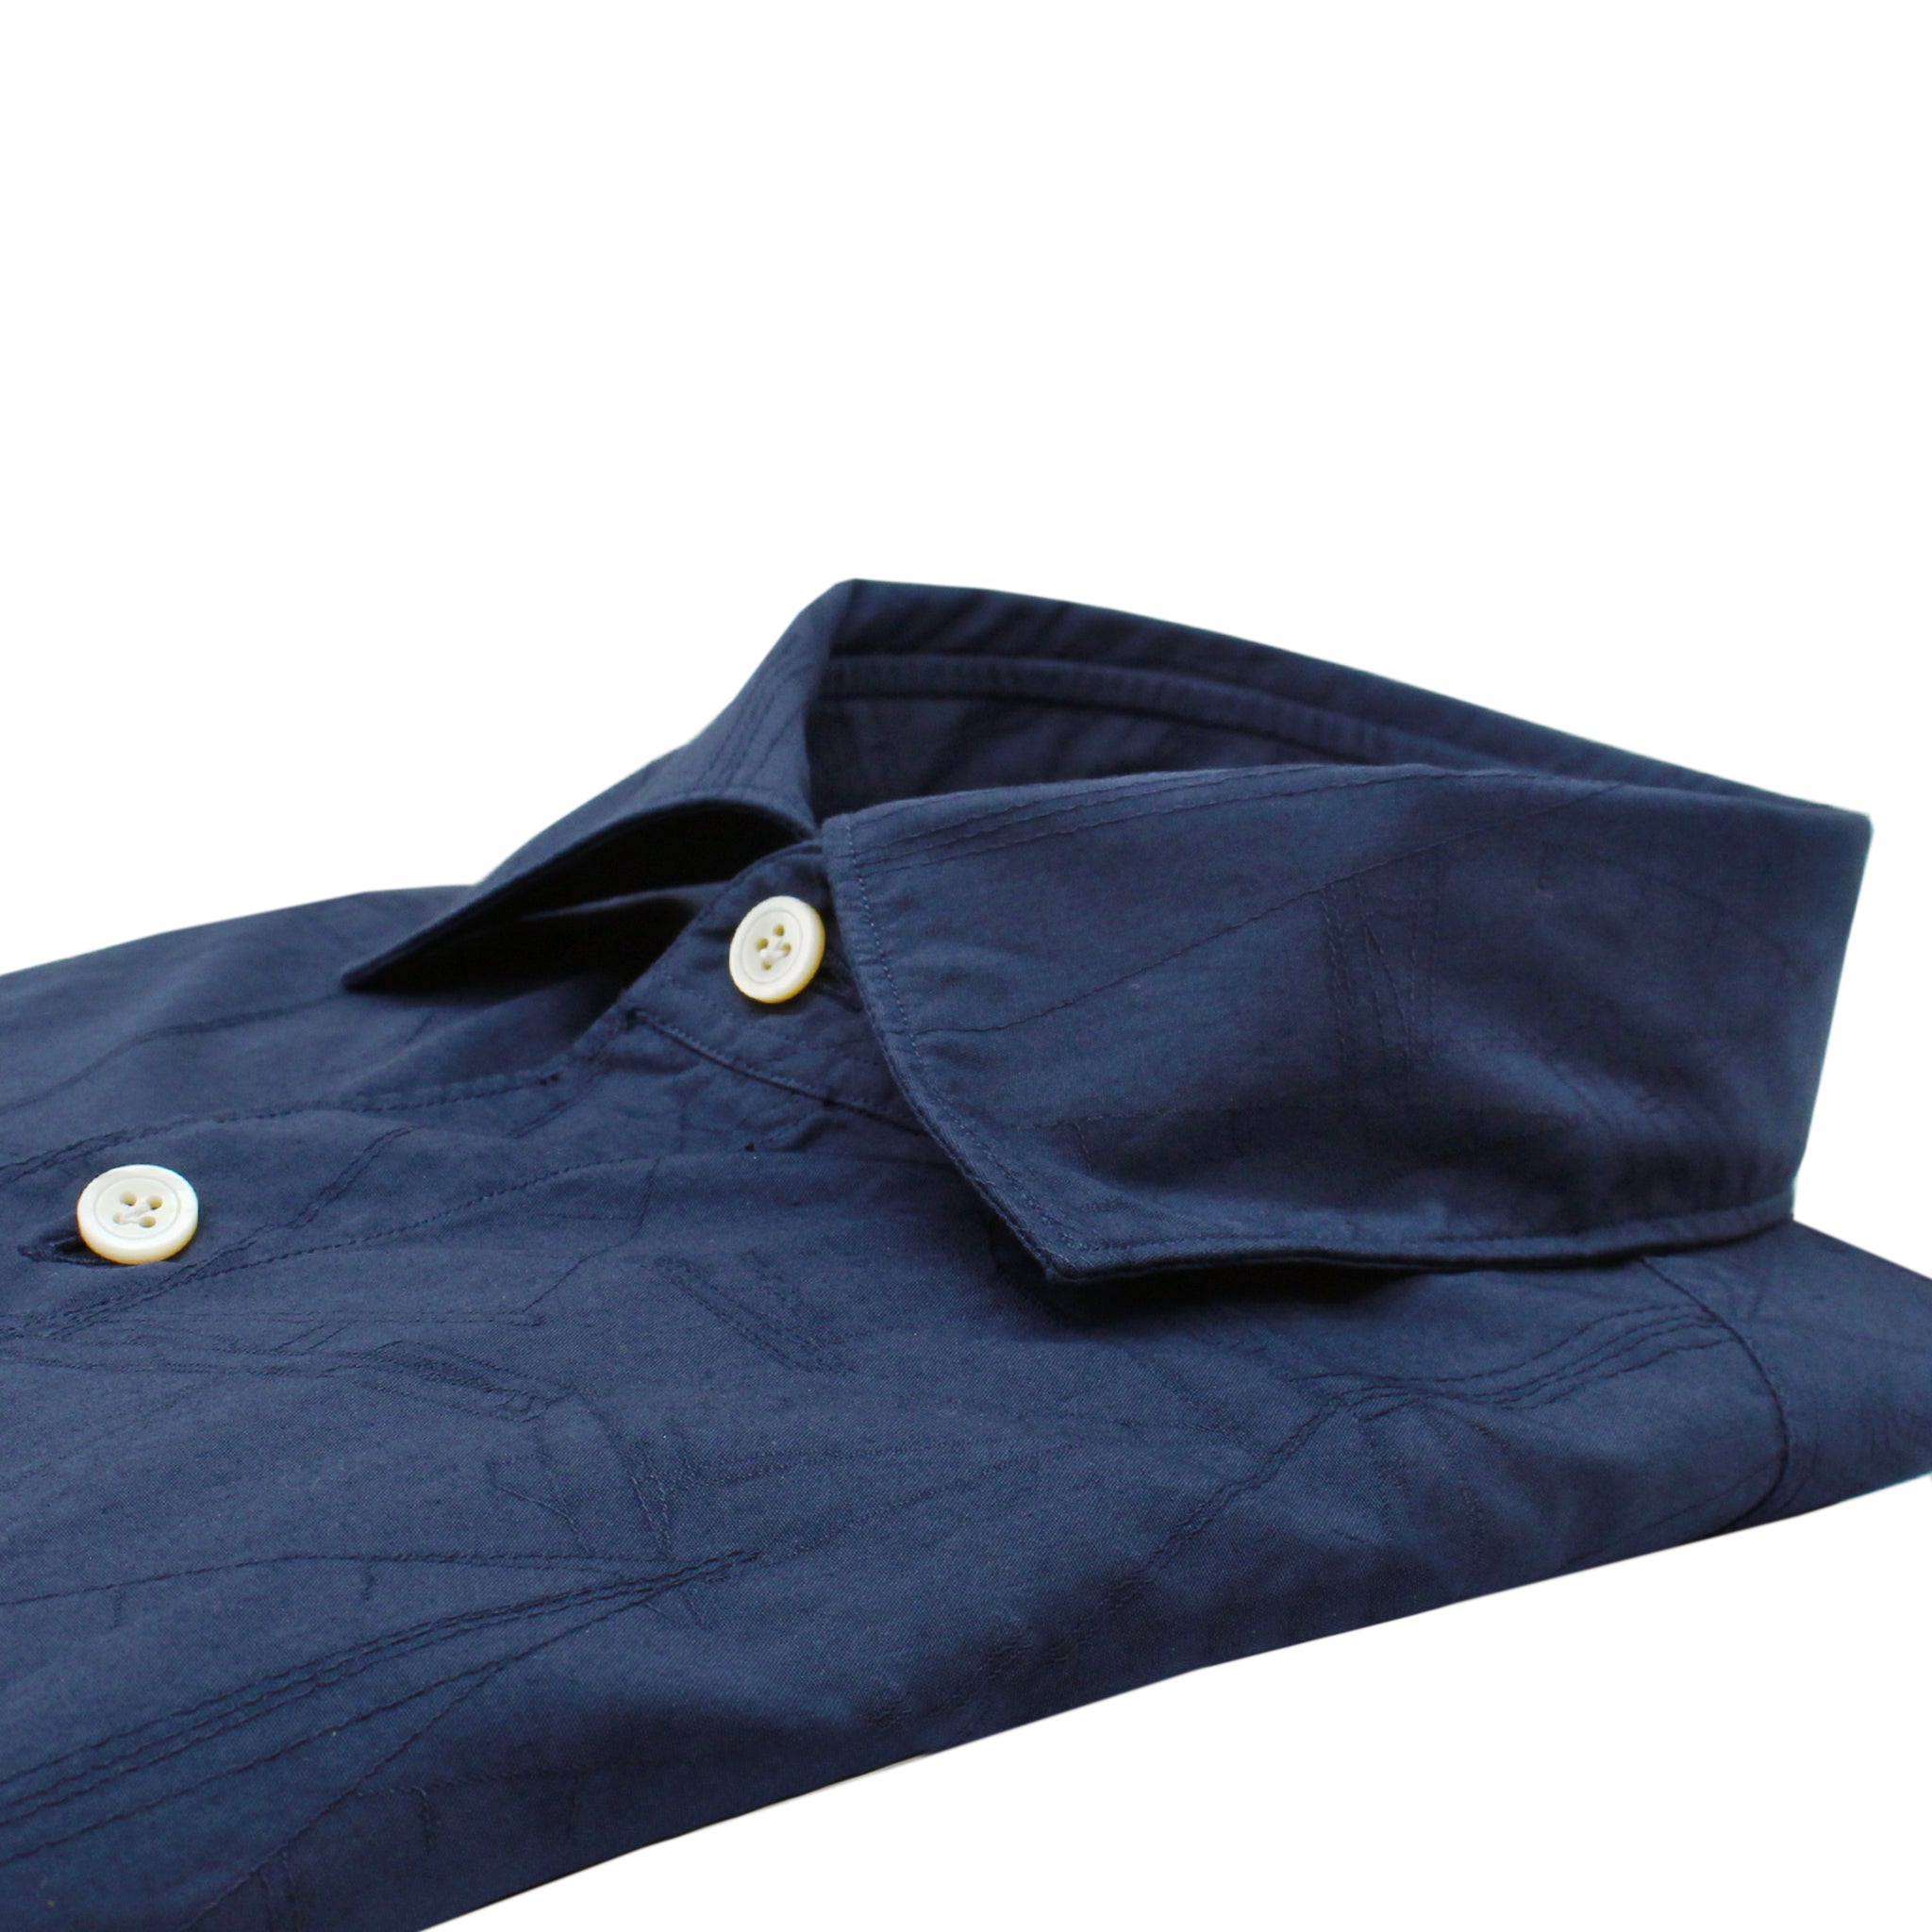 Camicia Tokyo slim fit in tessuto jacquard tinto in capo